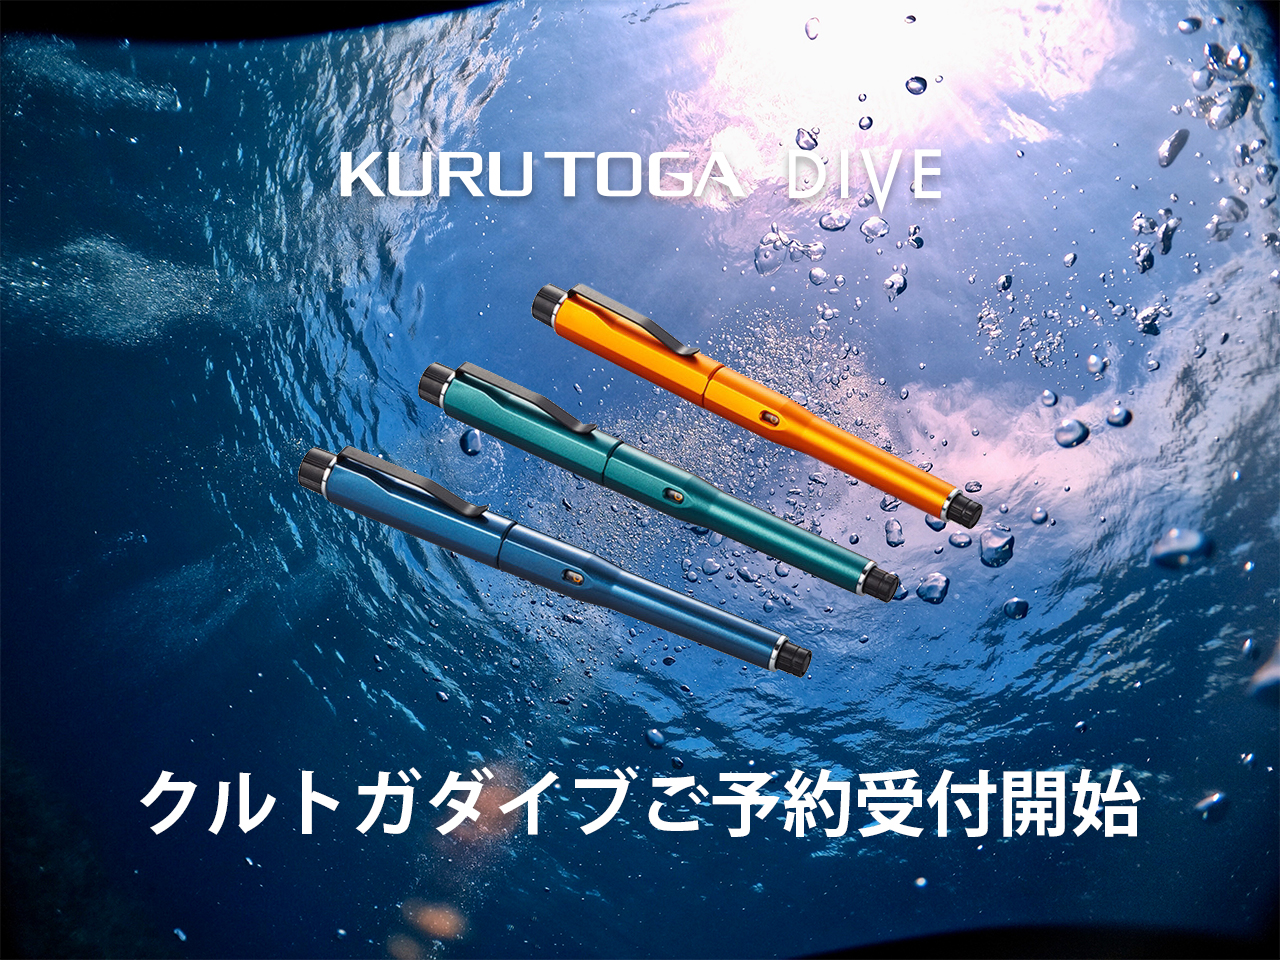 三菱鉛筆『クルトガダイブ KURUTOGA DIVE 』新モデル3カラーのご予約